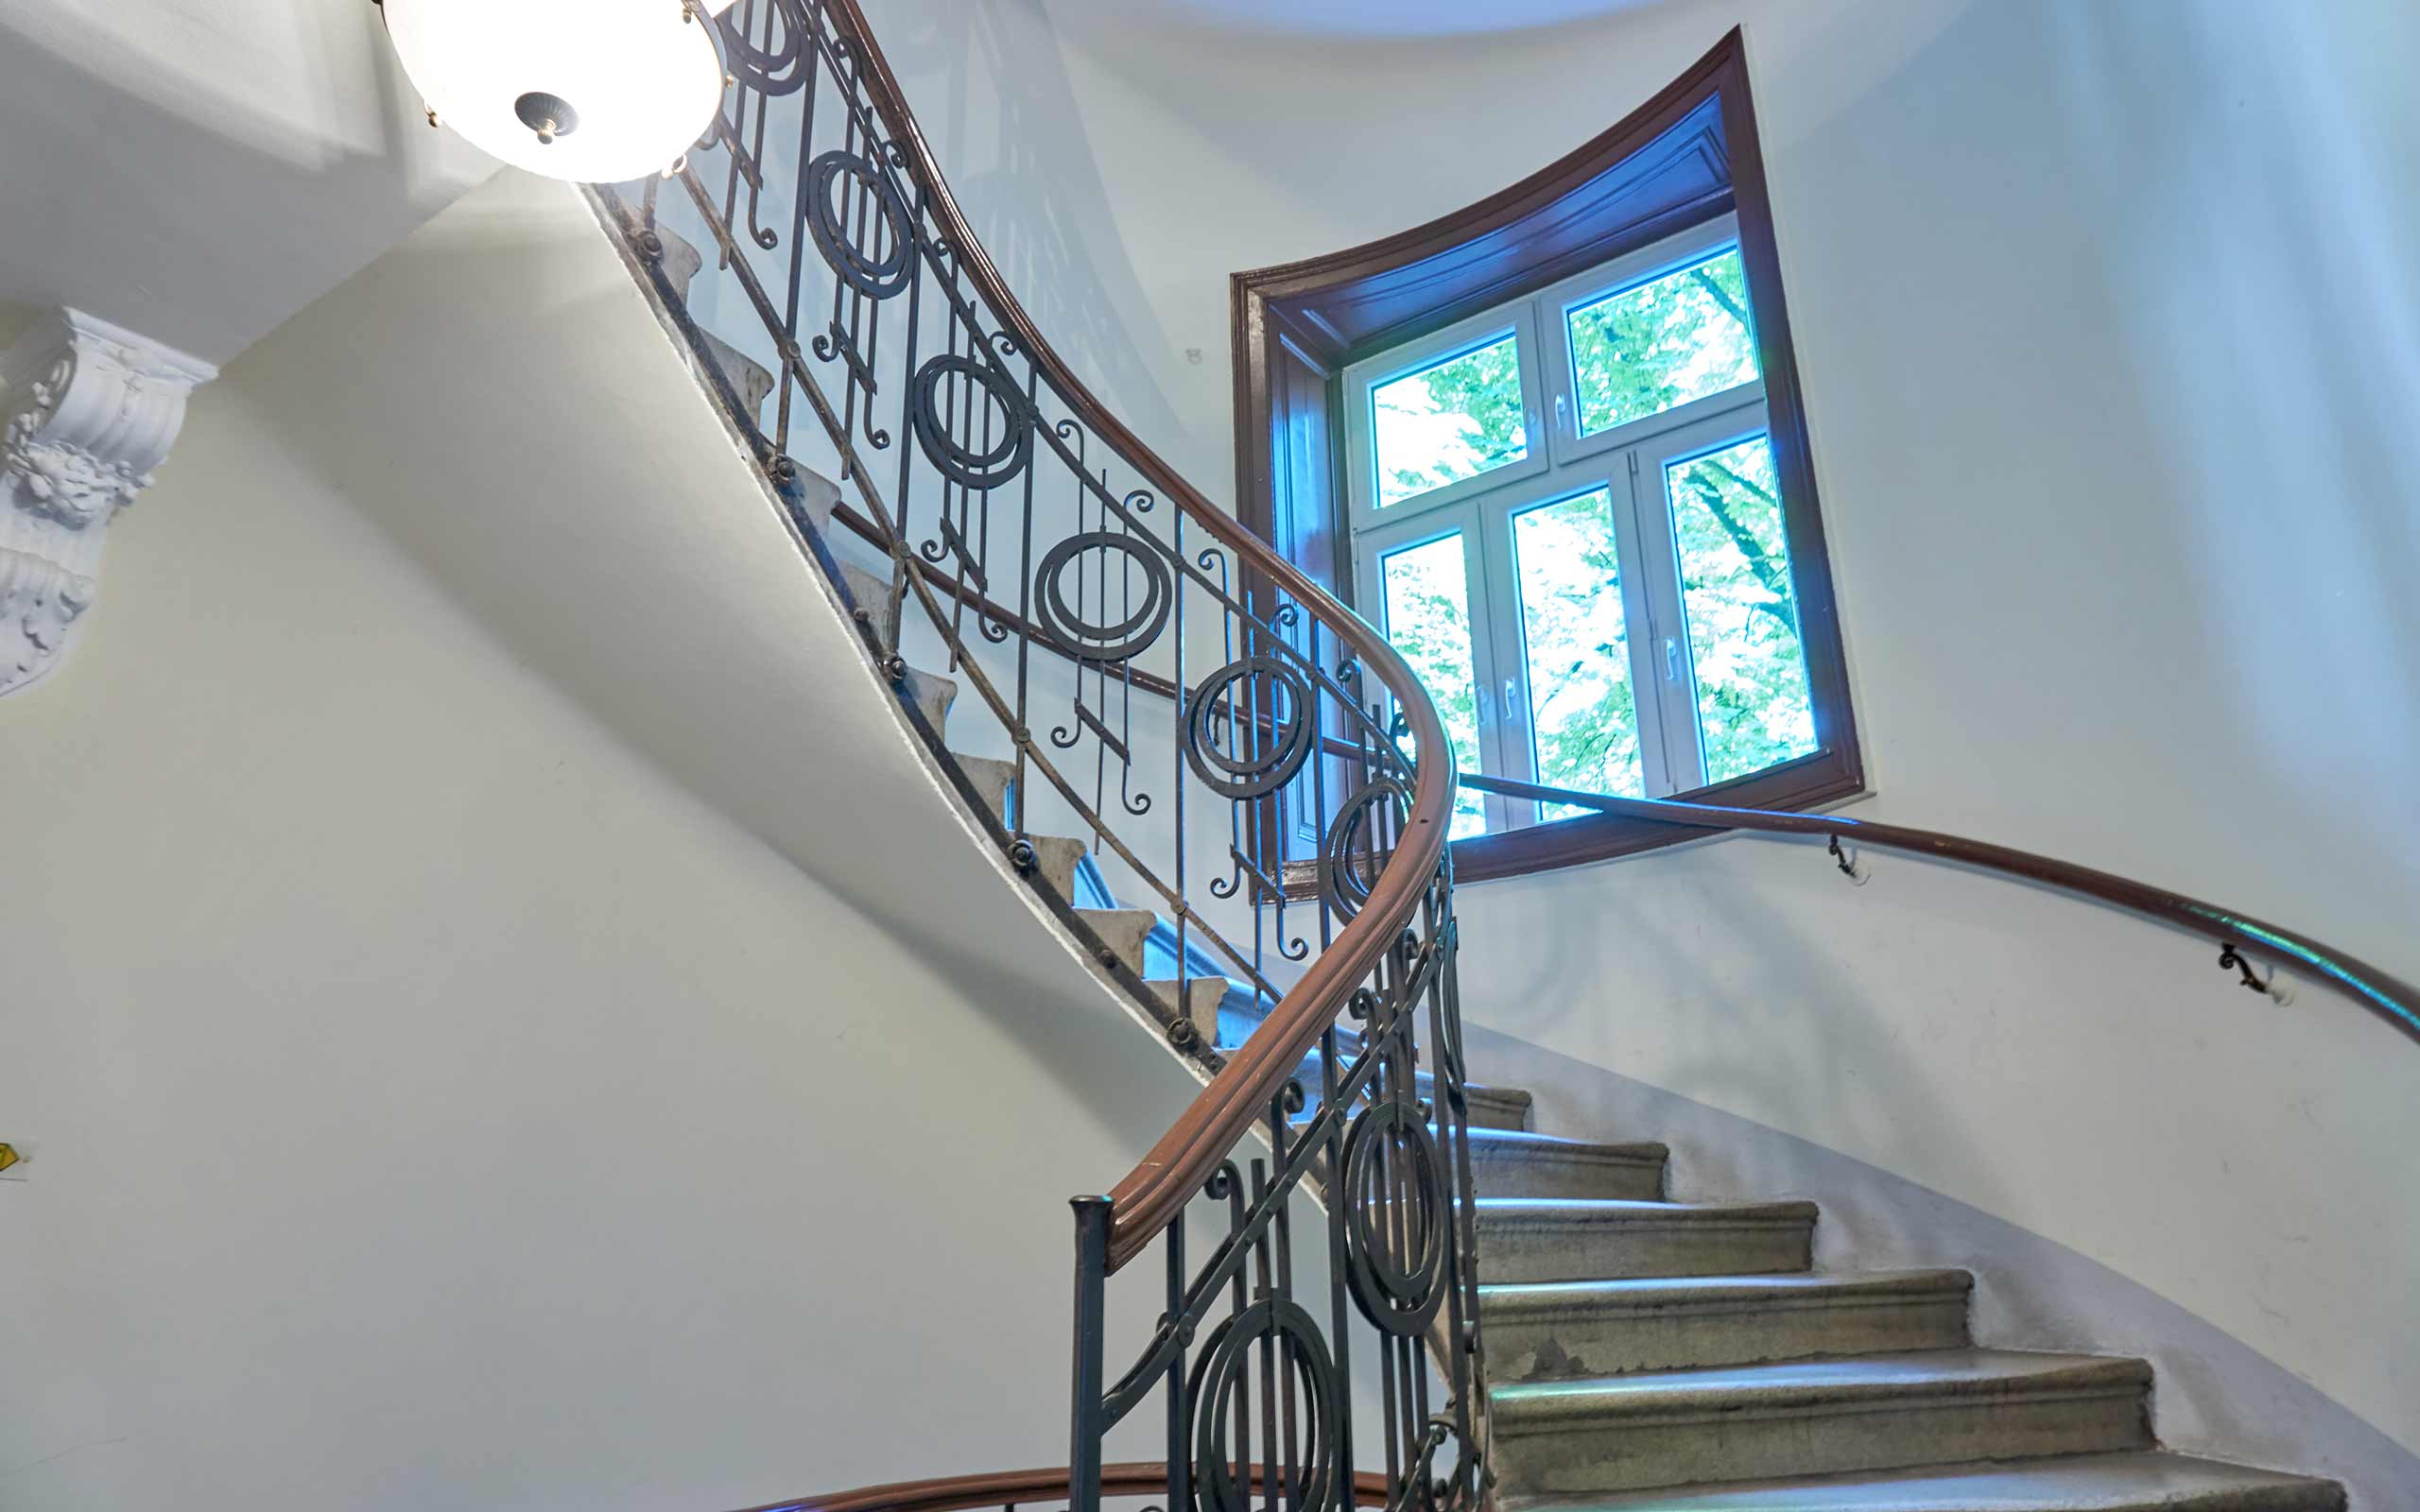 3SI, Wiener Zinshausentwickler, saniert detailliert auch Stiegenaufgänge und Eingangsbereiche